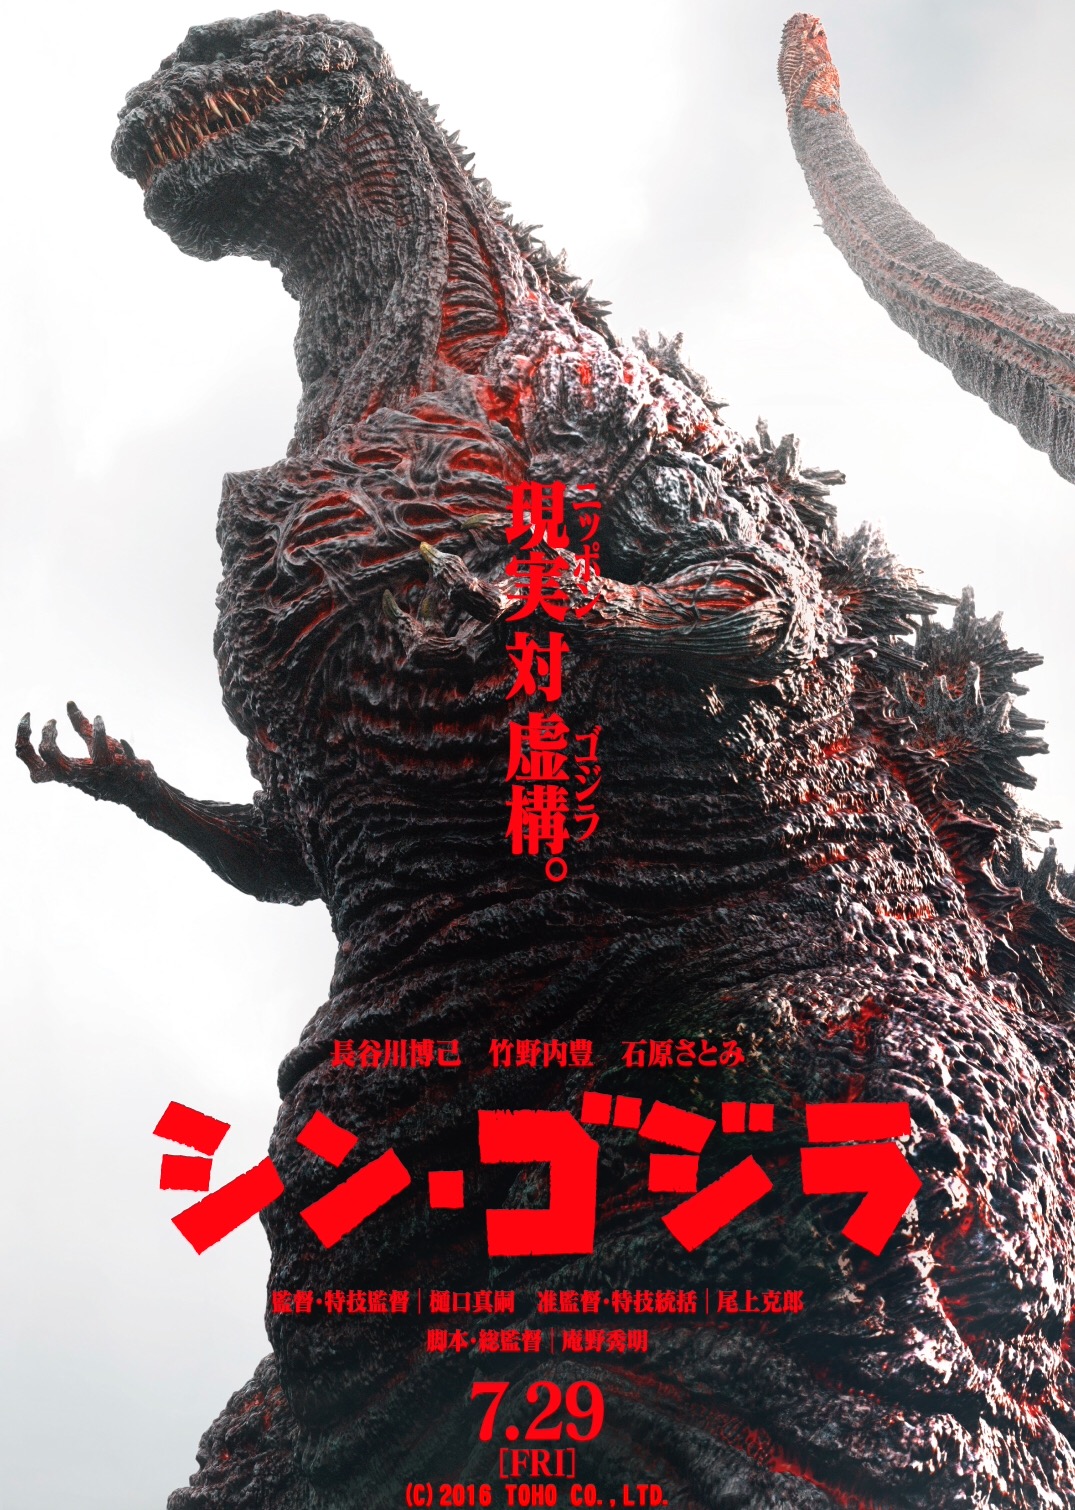 ดูหนังออนไลน์ฟรี Shin Godzilla 2016 เว็บดูหนังใหม่ออนไลน์ฟรี